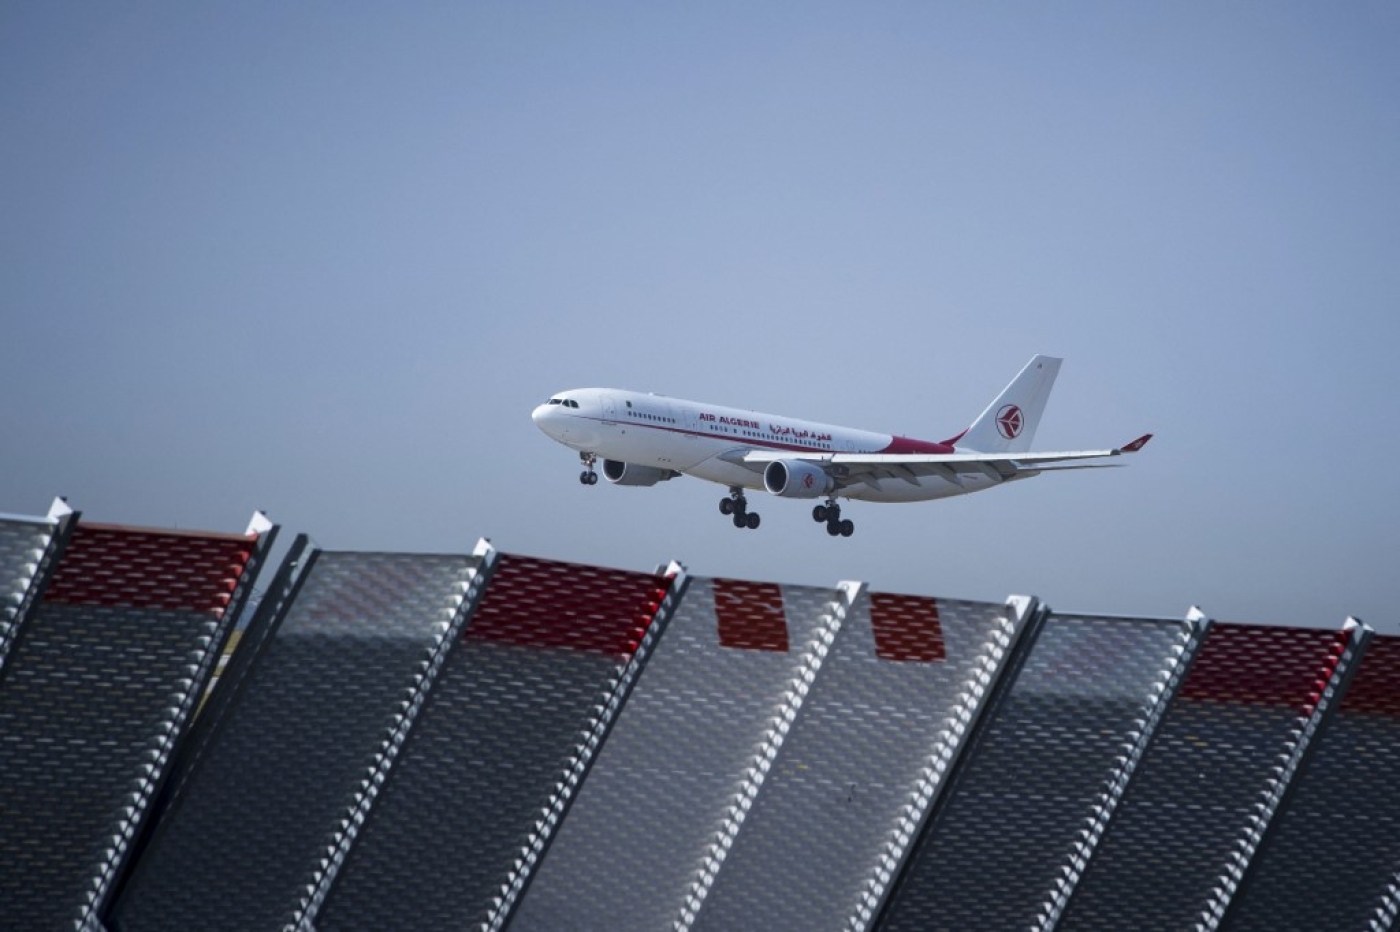 Un avion d’Air Algérie atterrit à l’aéroport de Roissy-Charles-de-Gaulle le 7 août 2018 (AFP)